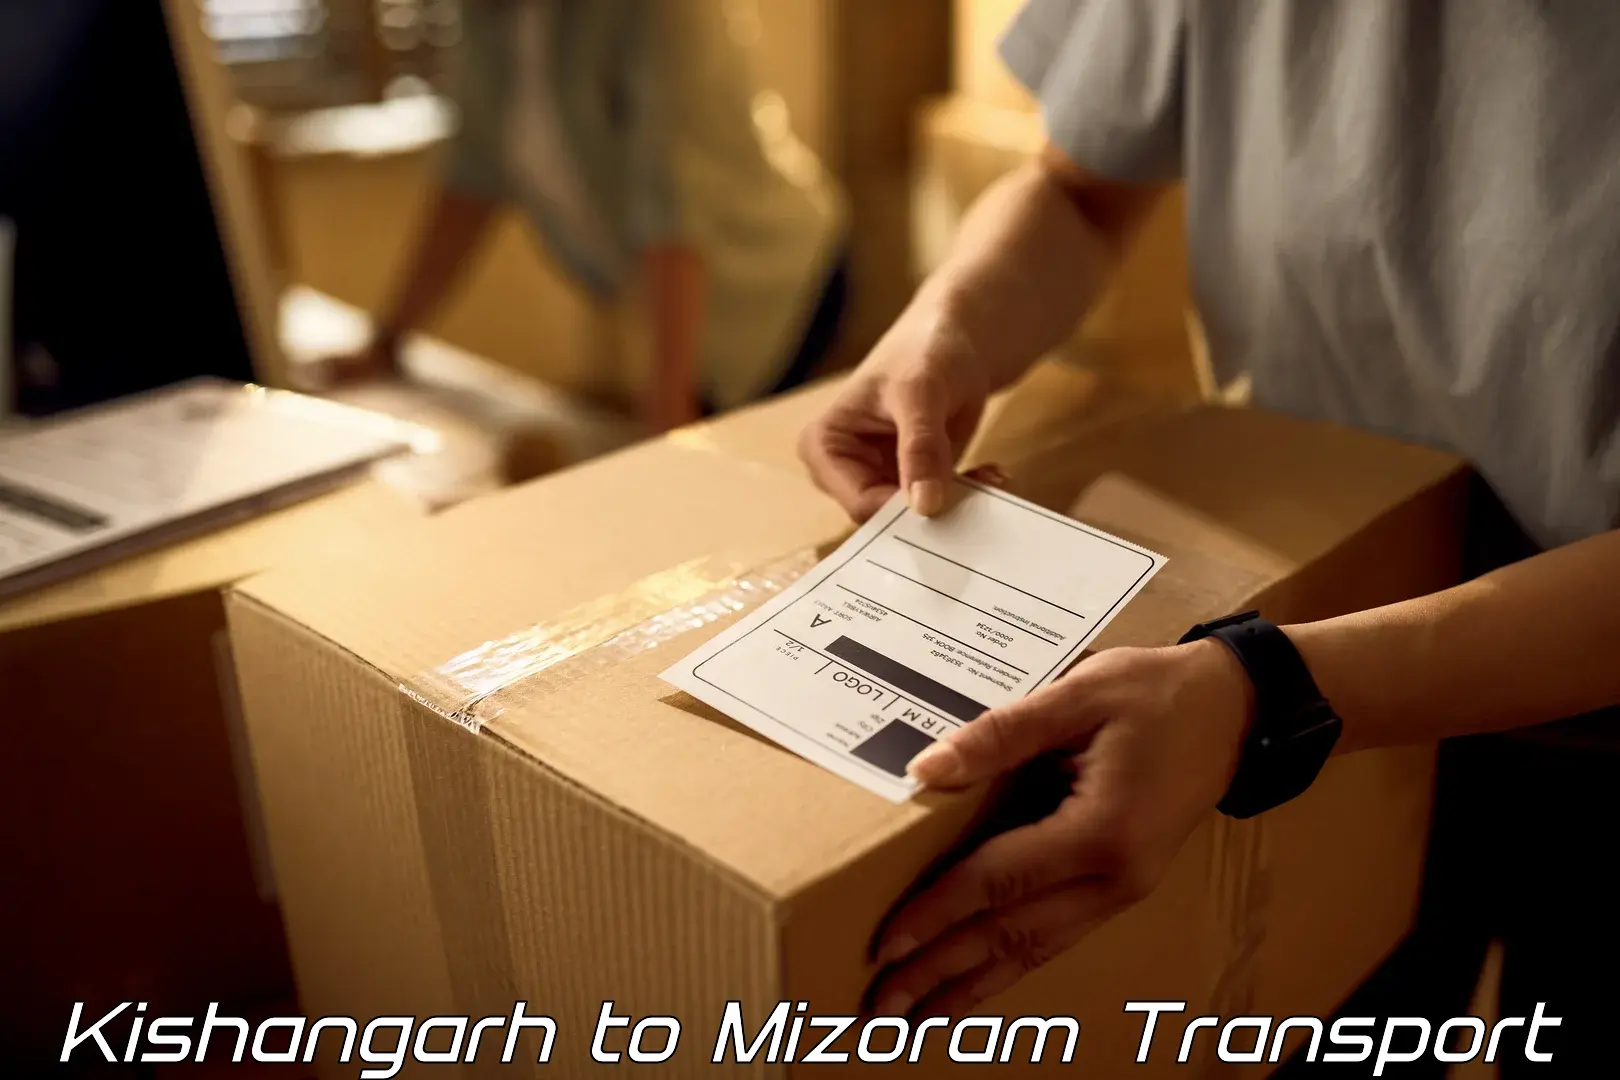 Truck transport companies in India Kishangarh to Mizoram